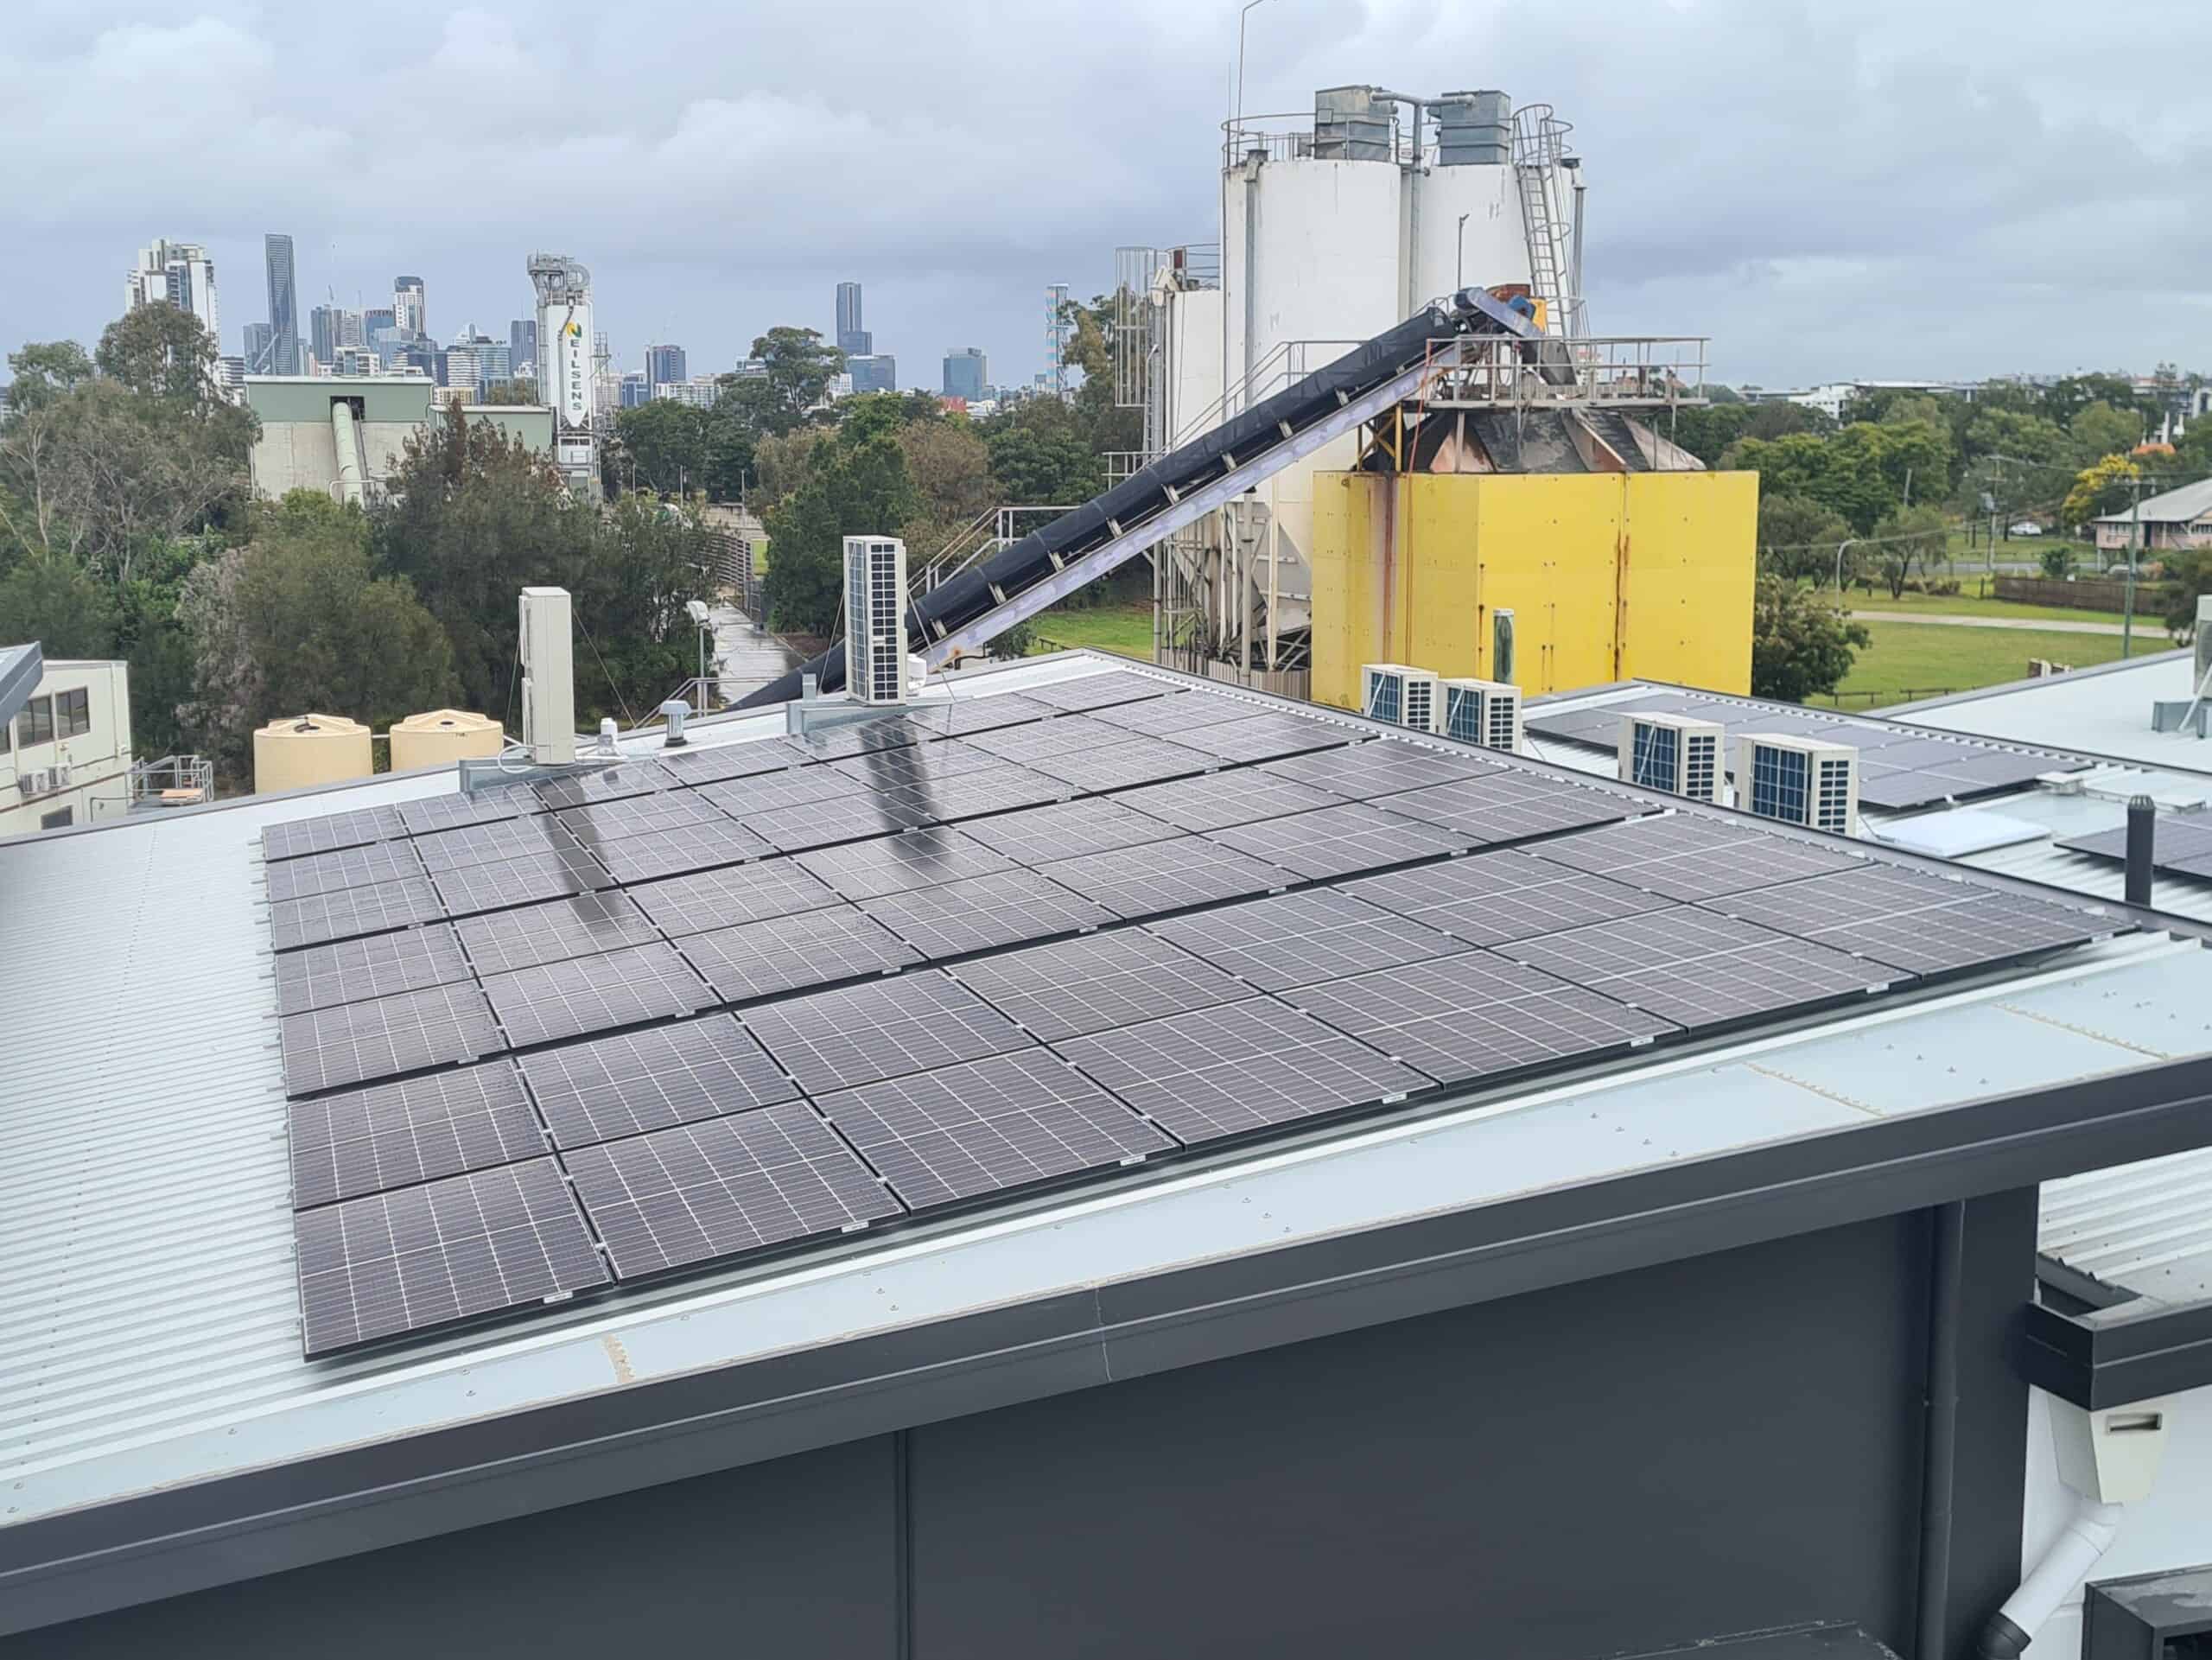 18.13kW Solar array panels